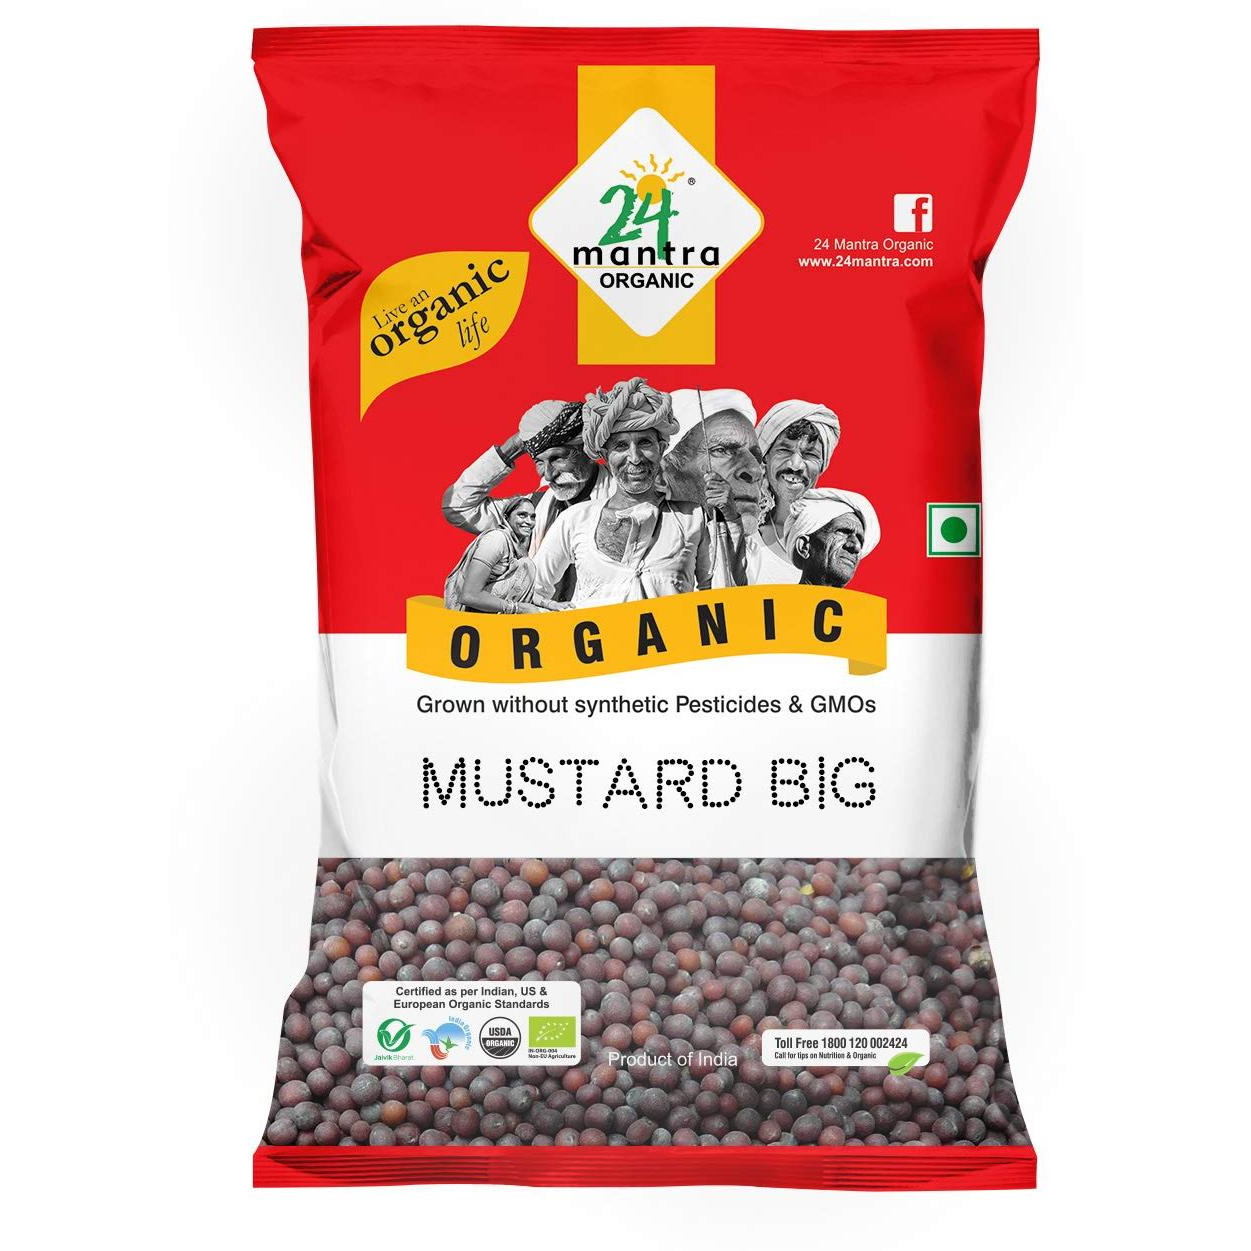 24 Mantra Organic Mustard Big 7 Oz